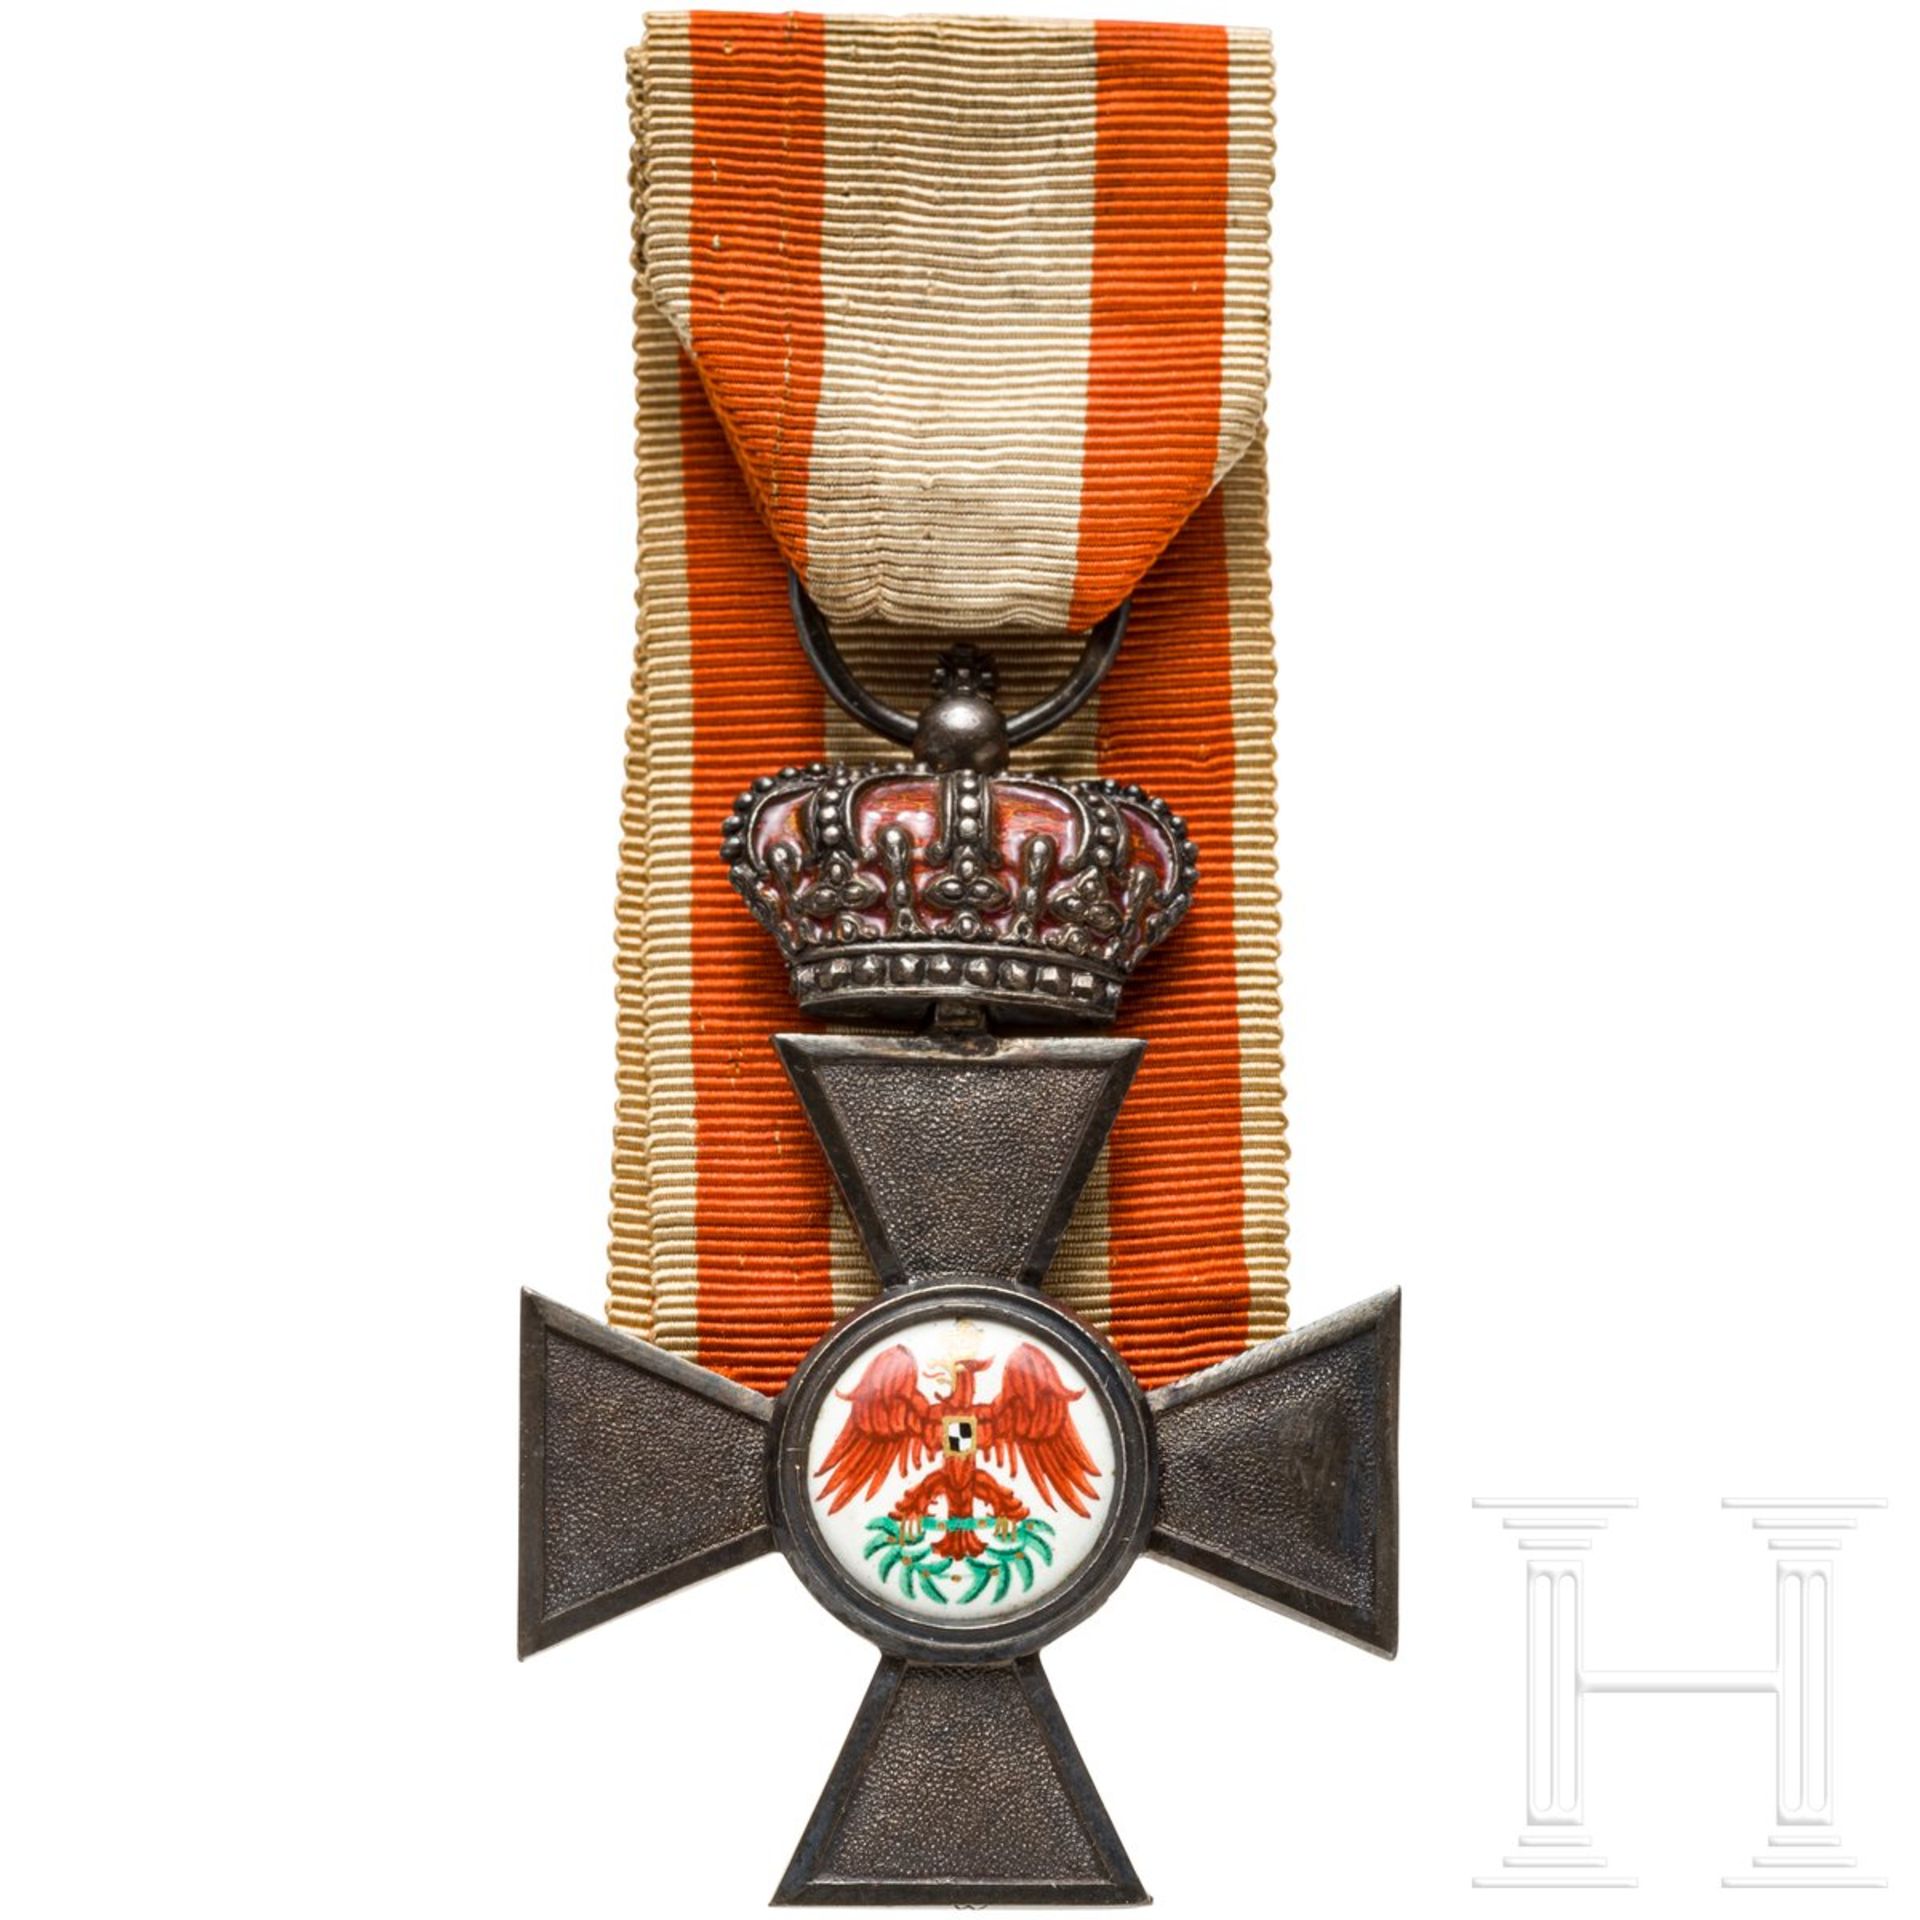 Roter Adler-Orden 4. Klasse mit der königlichen Krone, Urkunde - Bild 2 aus 3